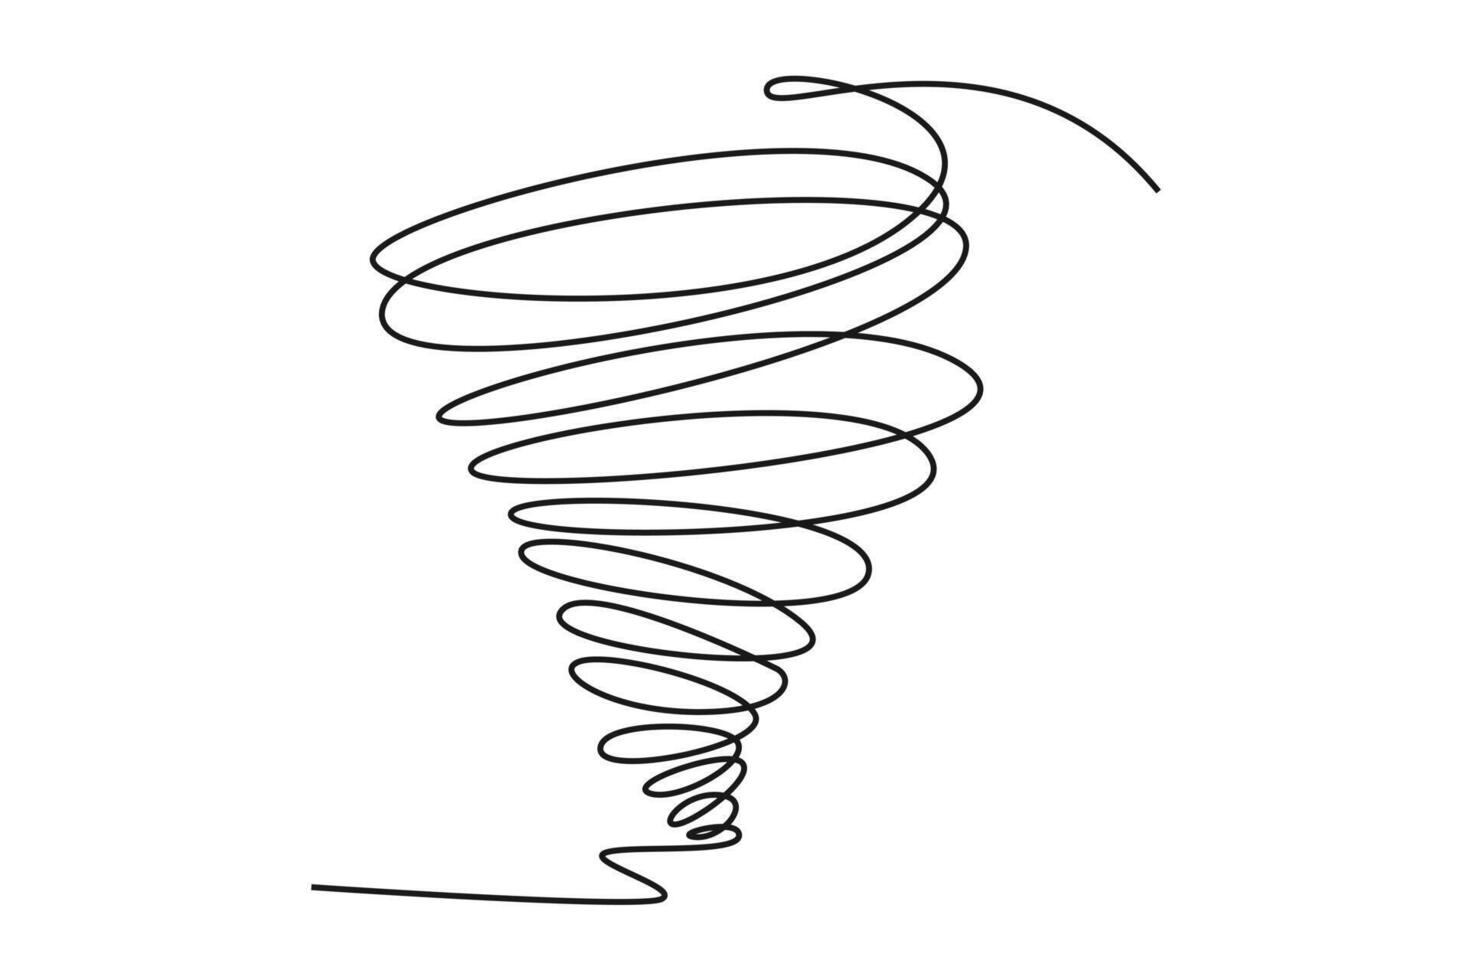 ett kontinuerlig linje teckning av söt väder fenomen begrepp. klotter vektor illustration i enkel linjär stil.